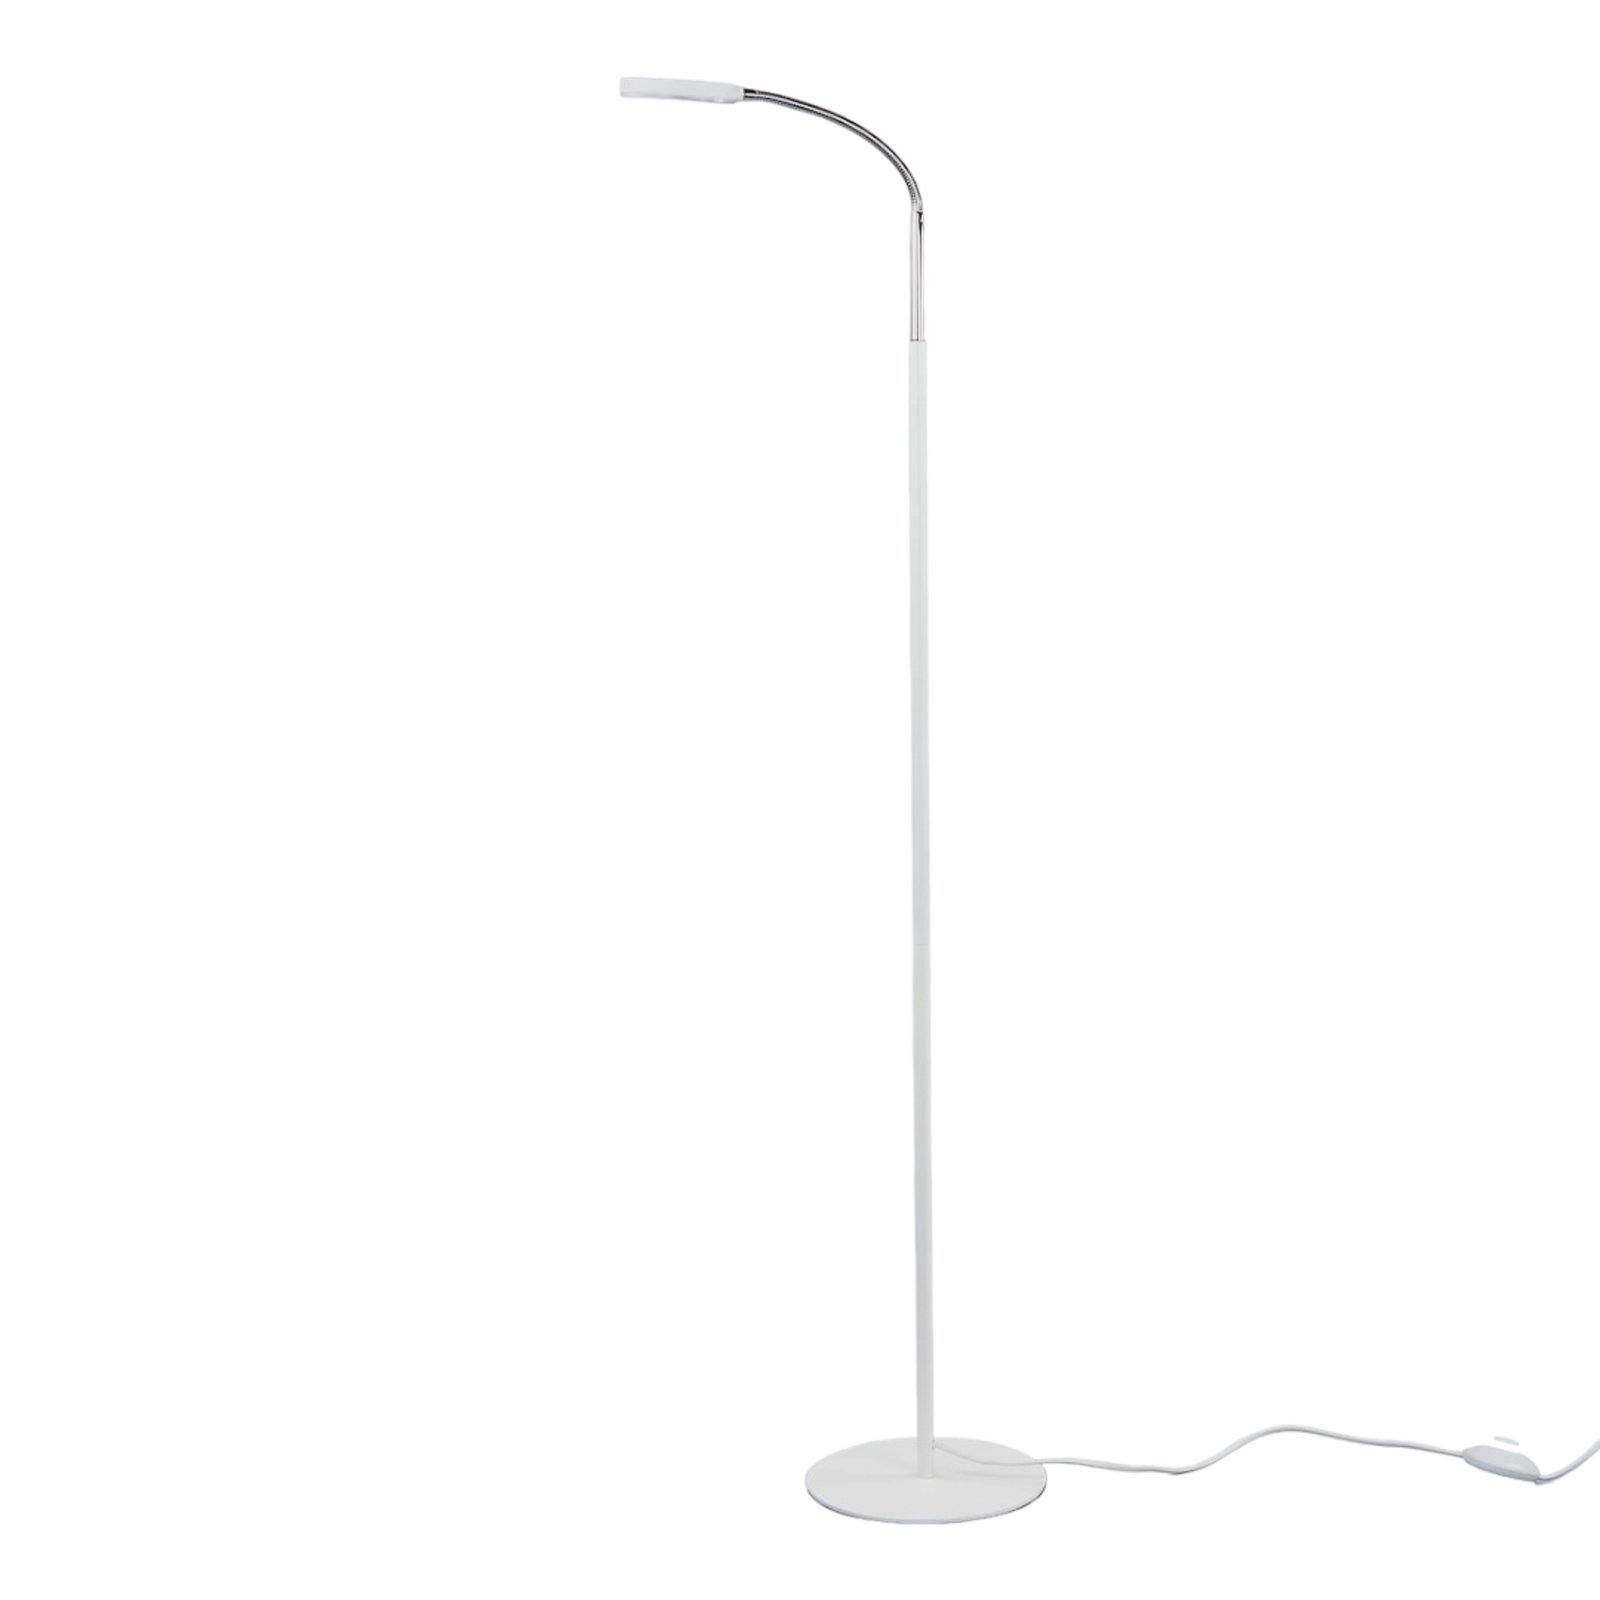 Lindby LED-lattiavalaisin Milow, valkoinen, 140 cm korkea, jalkakytkin